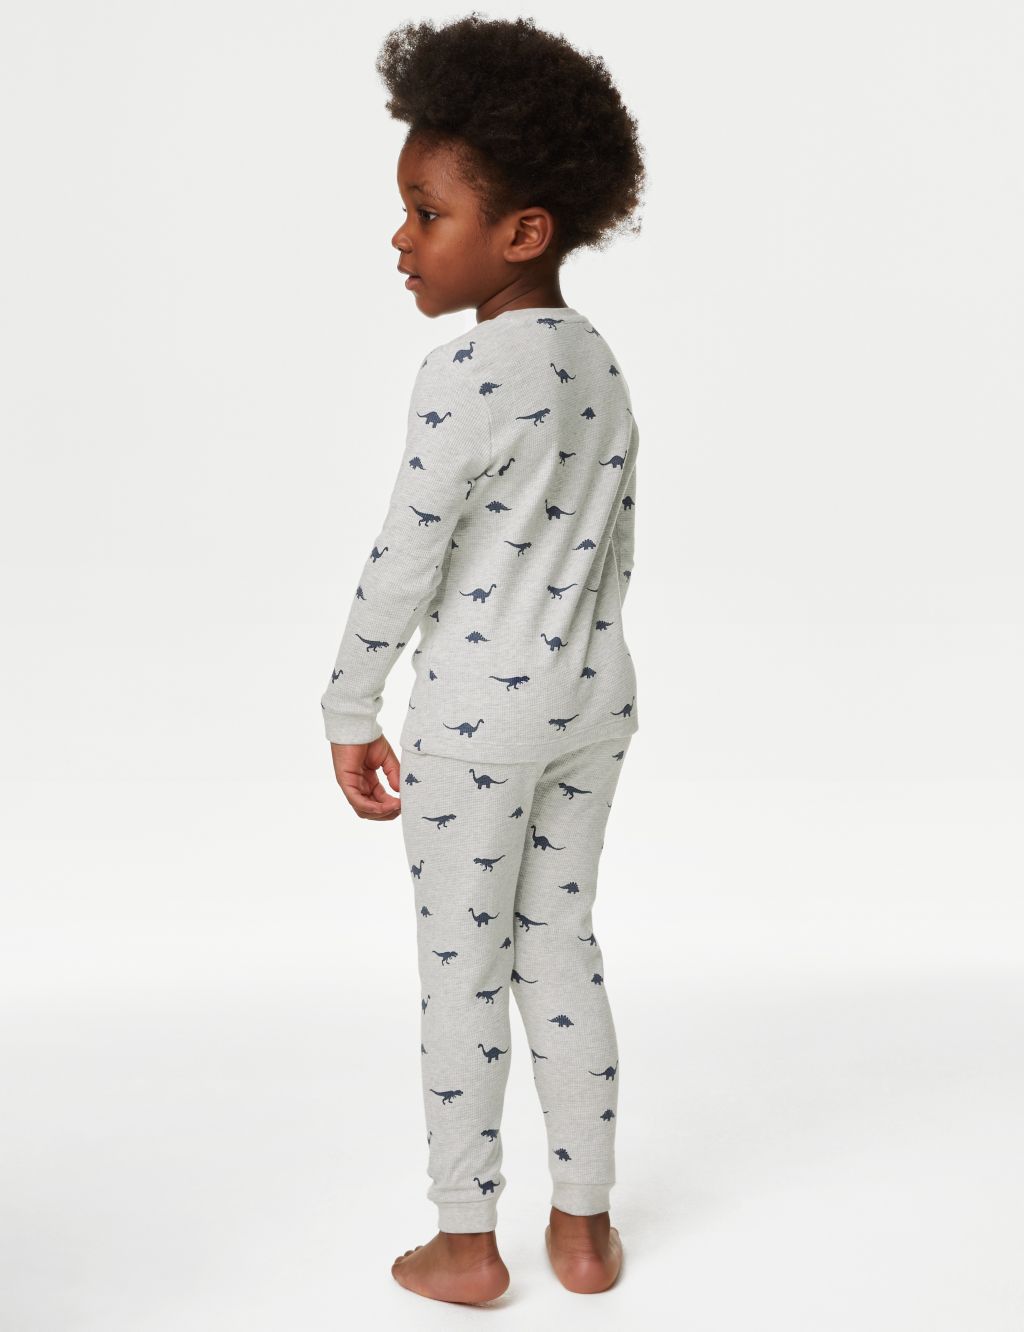 Pure Cotton Dinosaur Print Pyjamas (1-8 Yrs) image 3